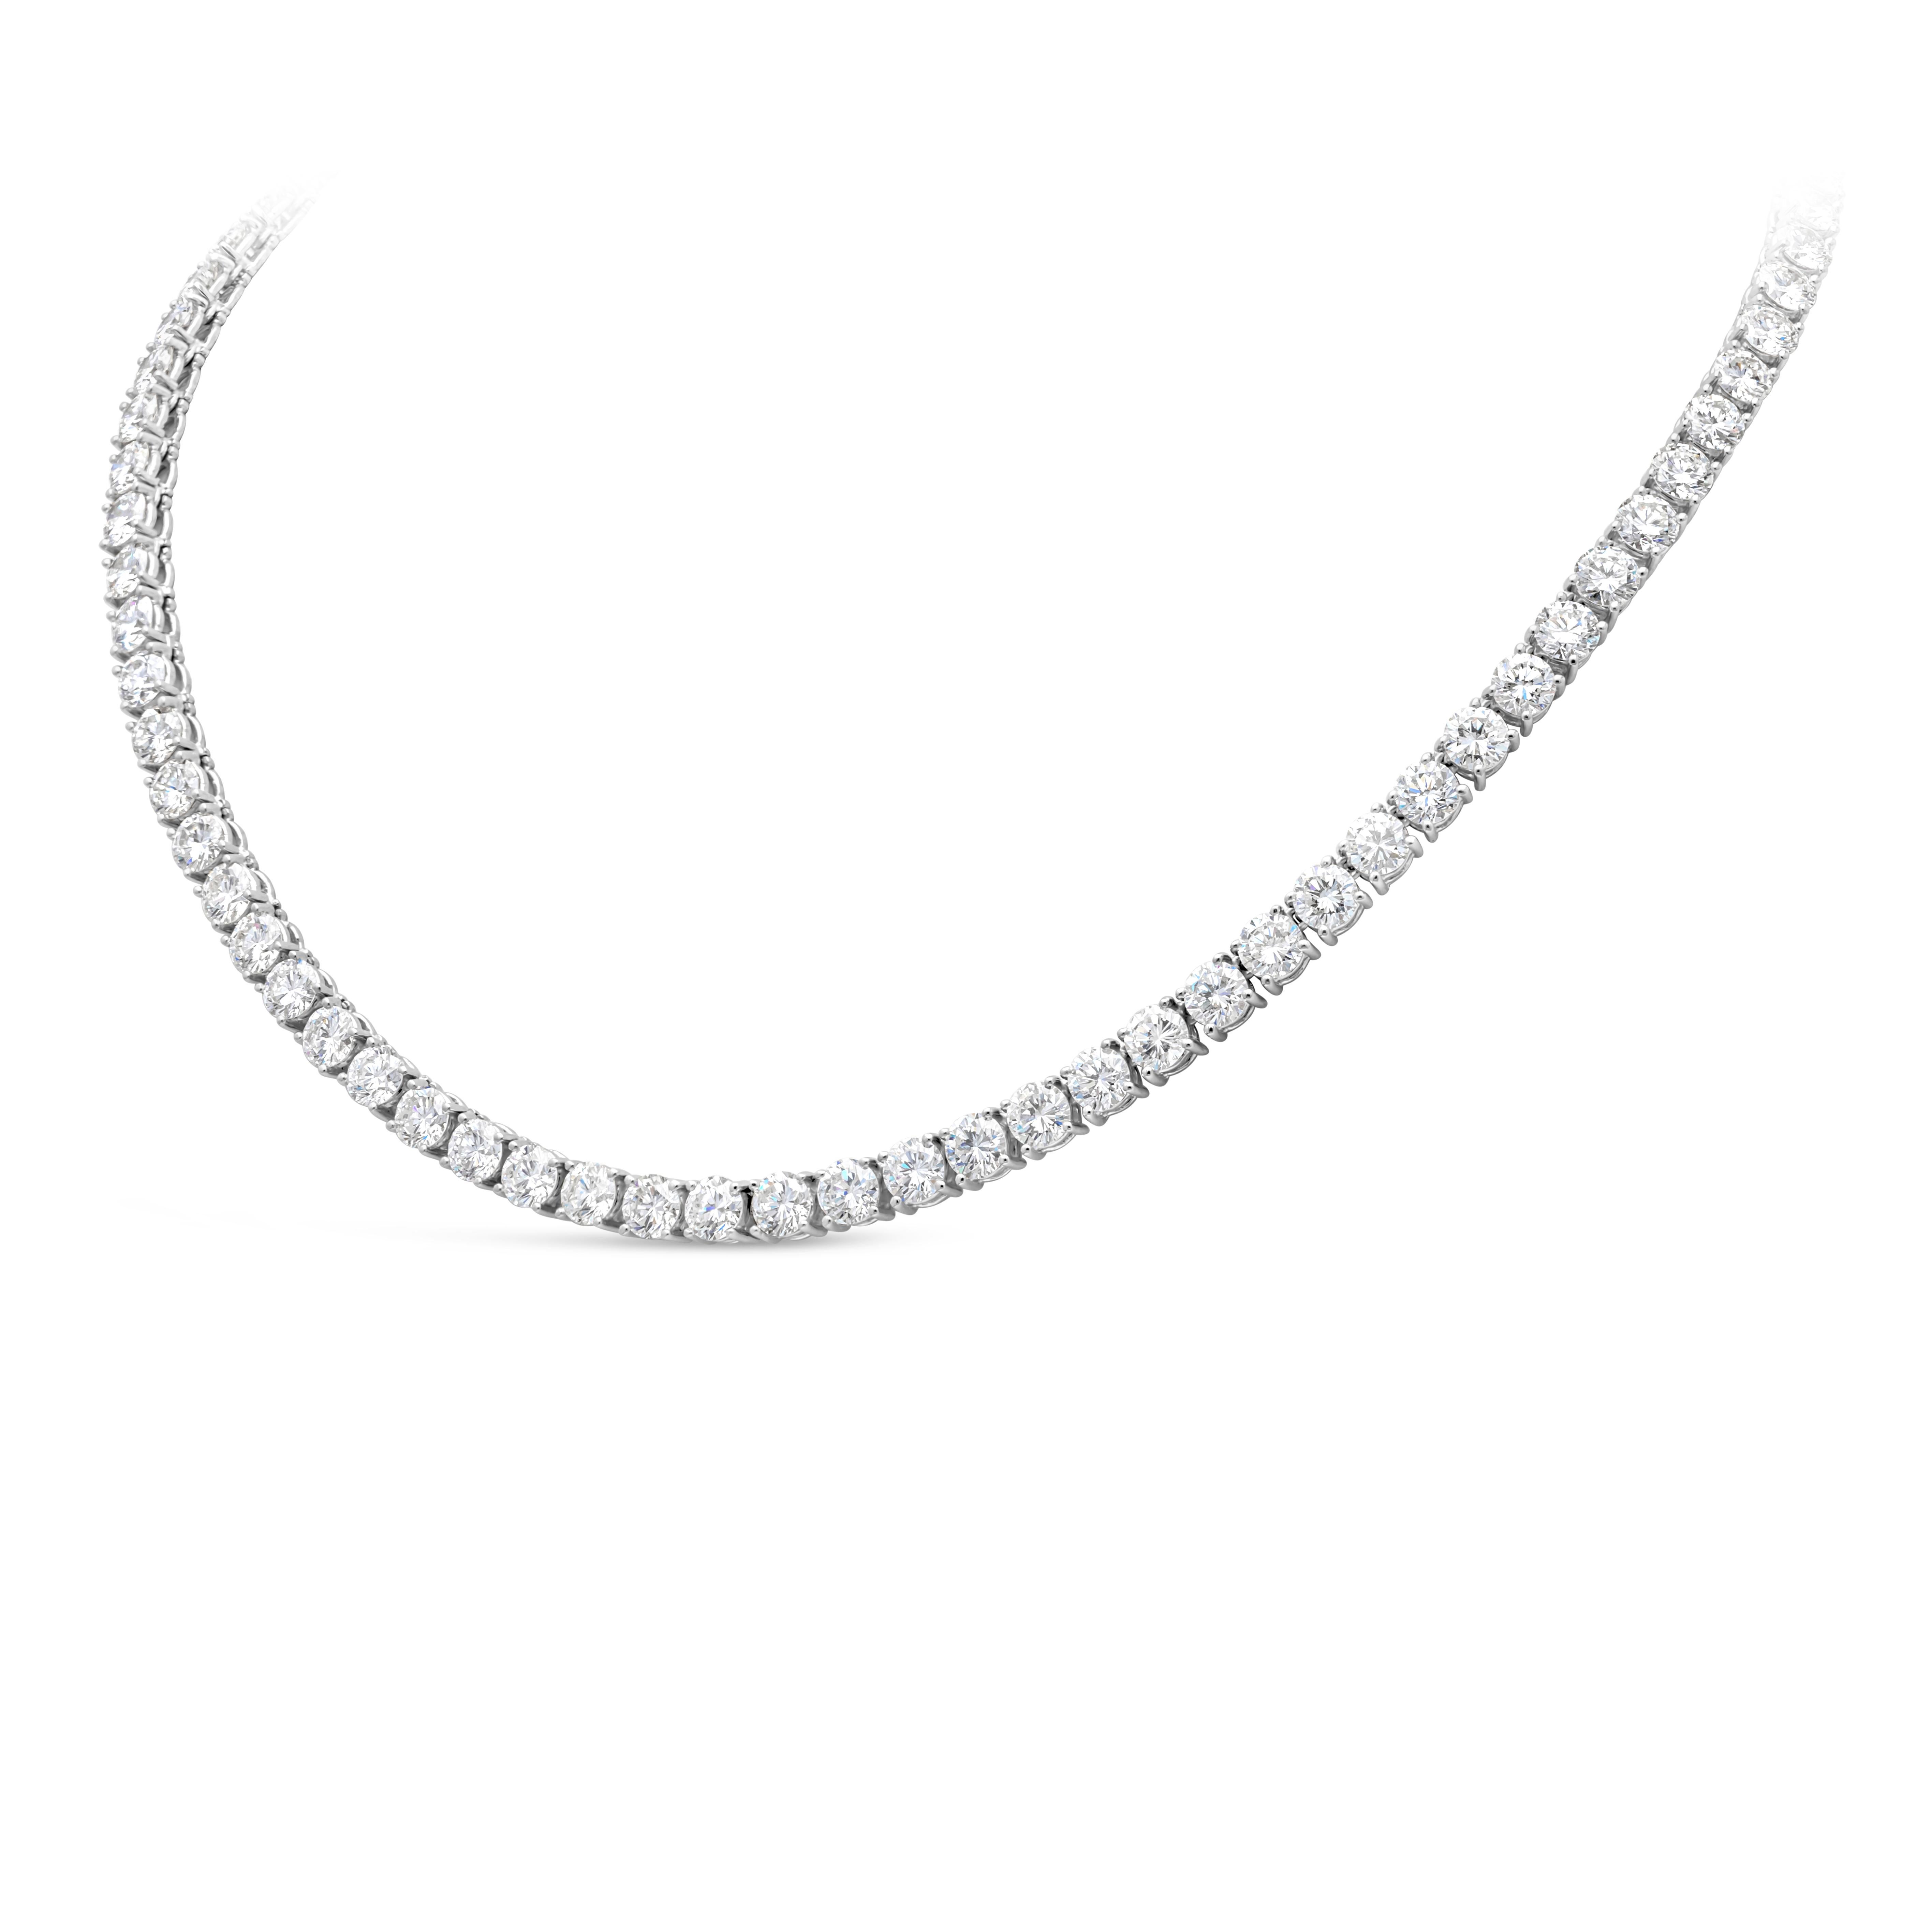 Ein eleganter High-End-Schmuck, der eine Reihe von Diamanten im runden Brillantschliff mit einem Gesamtgewicht von 22,59 Karat, Farbe E-F und Reinheit VS präsentiert. Diese atemberaubende Tennis-Halskette ist fein auf Platin gefasst und hat eine